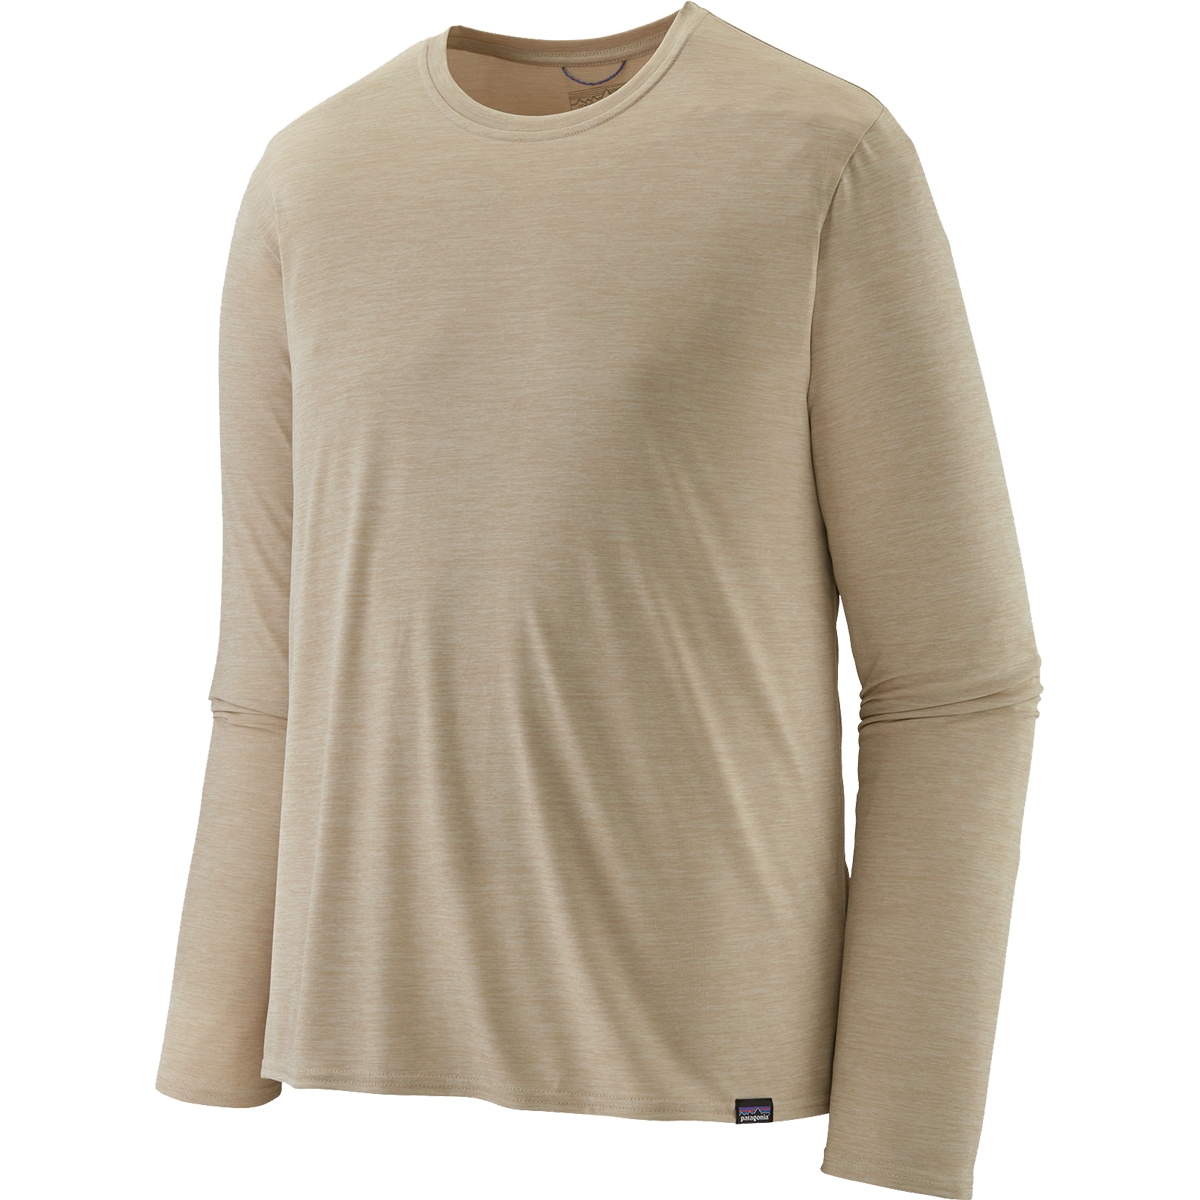 Men's Long-Sleeved Capilene Cool Daily Shirt alternate view